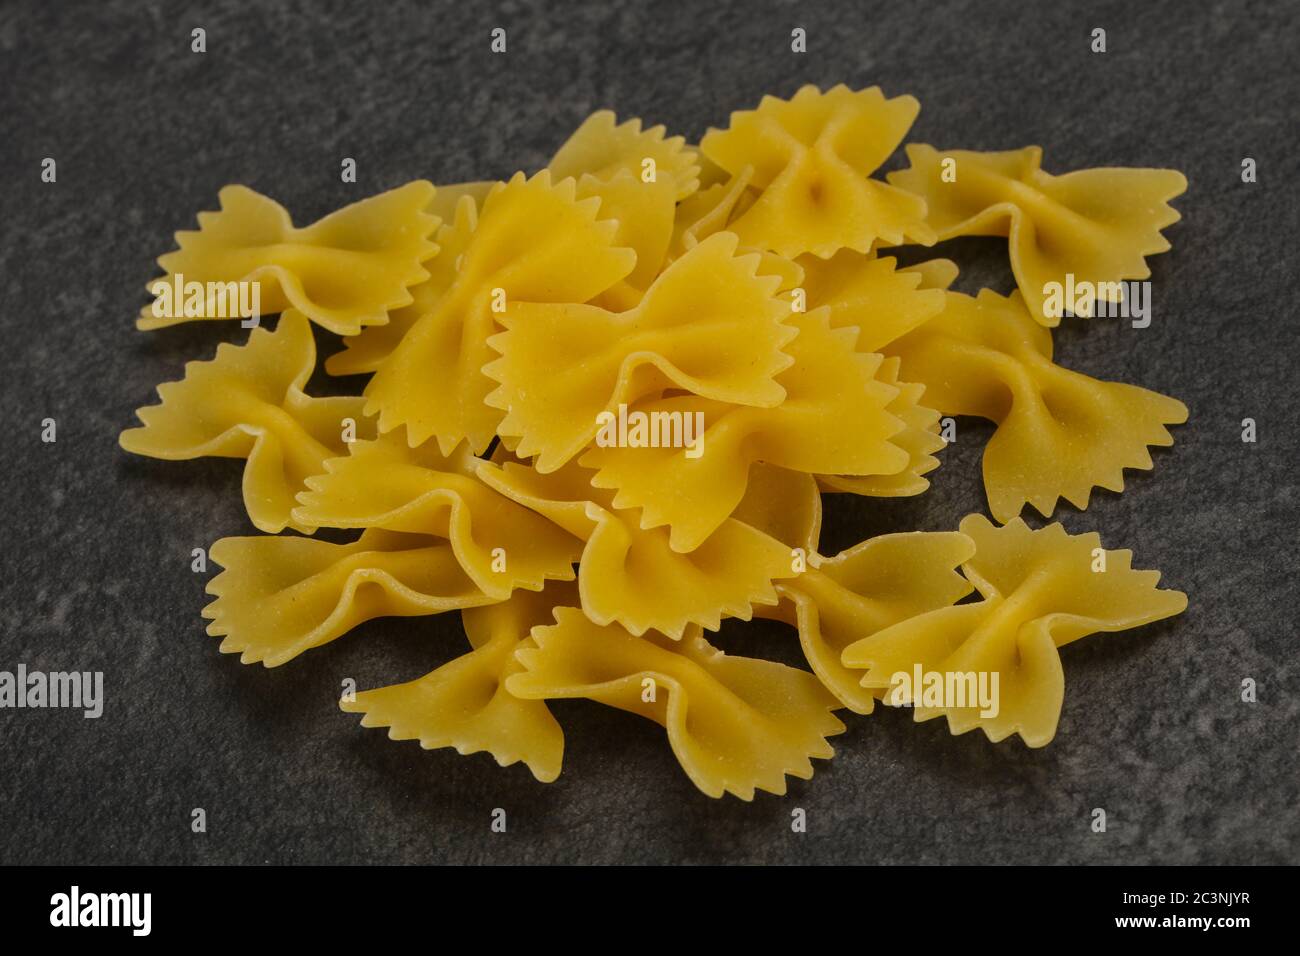 Raw trocken Farfalle pasta Bereit zum Kochen Stockfotografie - Alamy